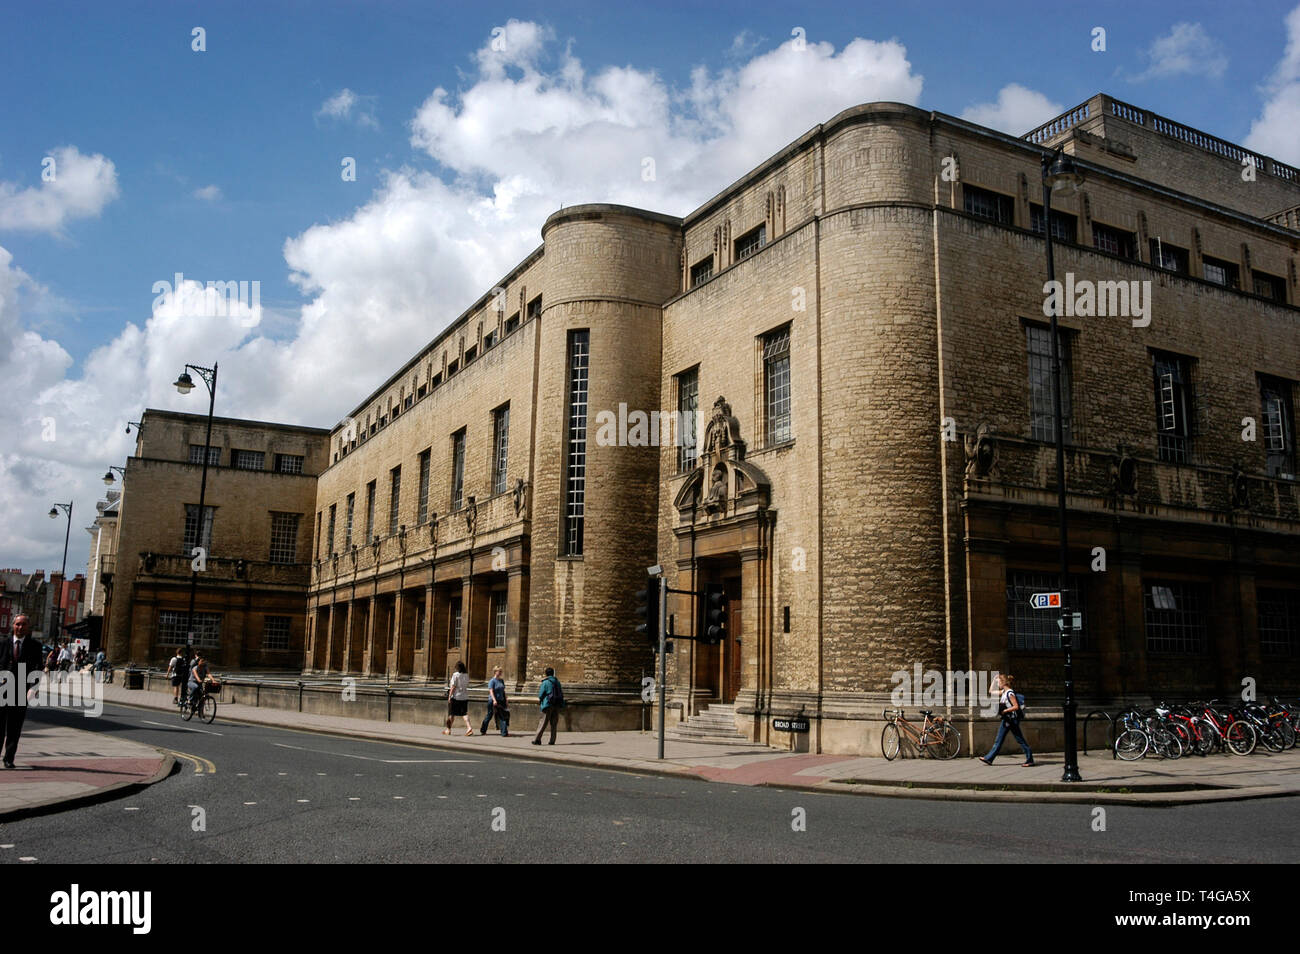 Le Weston bibliothèque fait partie de la Bodleian Library, la principale bibliothèque de recherche de l'Université d'Oxford dans Broad Street à Oxford, Angleterre. La lib Banque D'Images